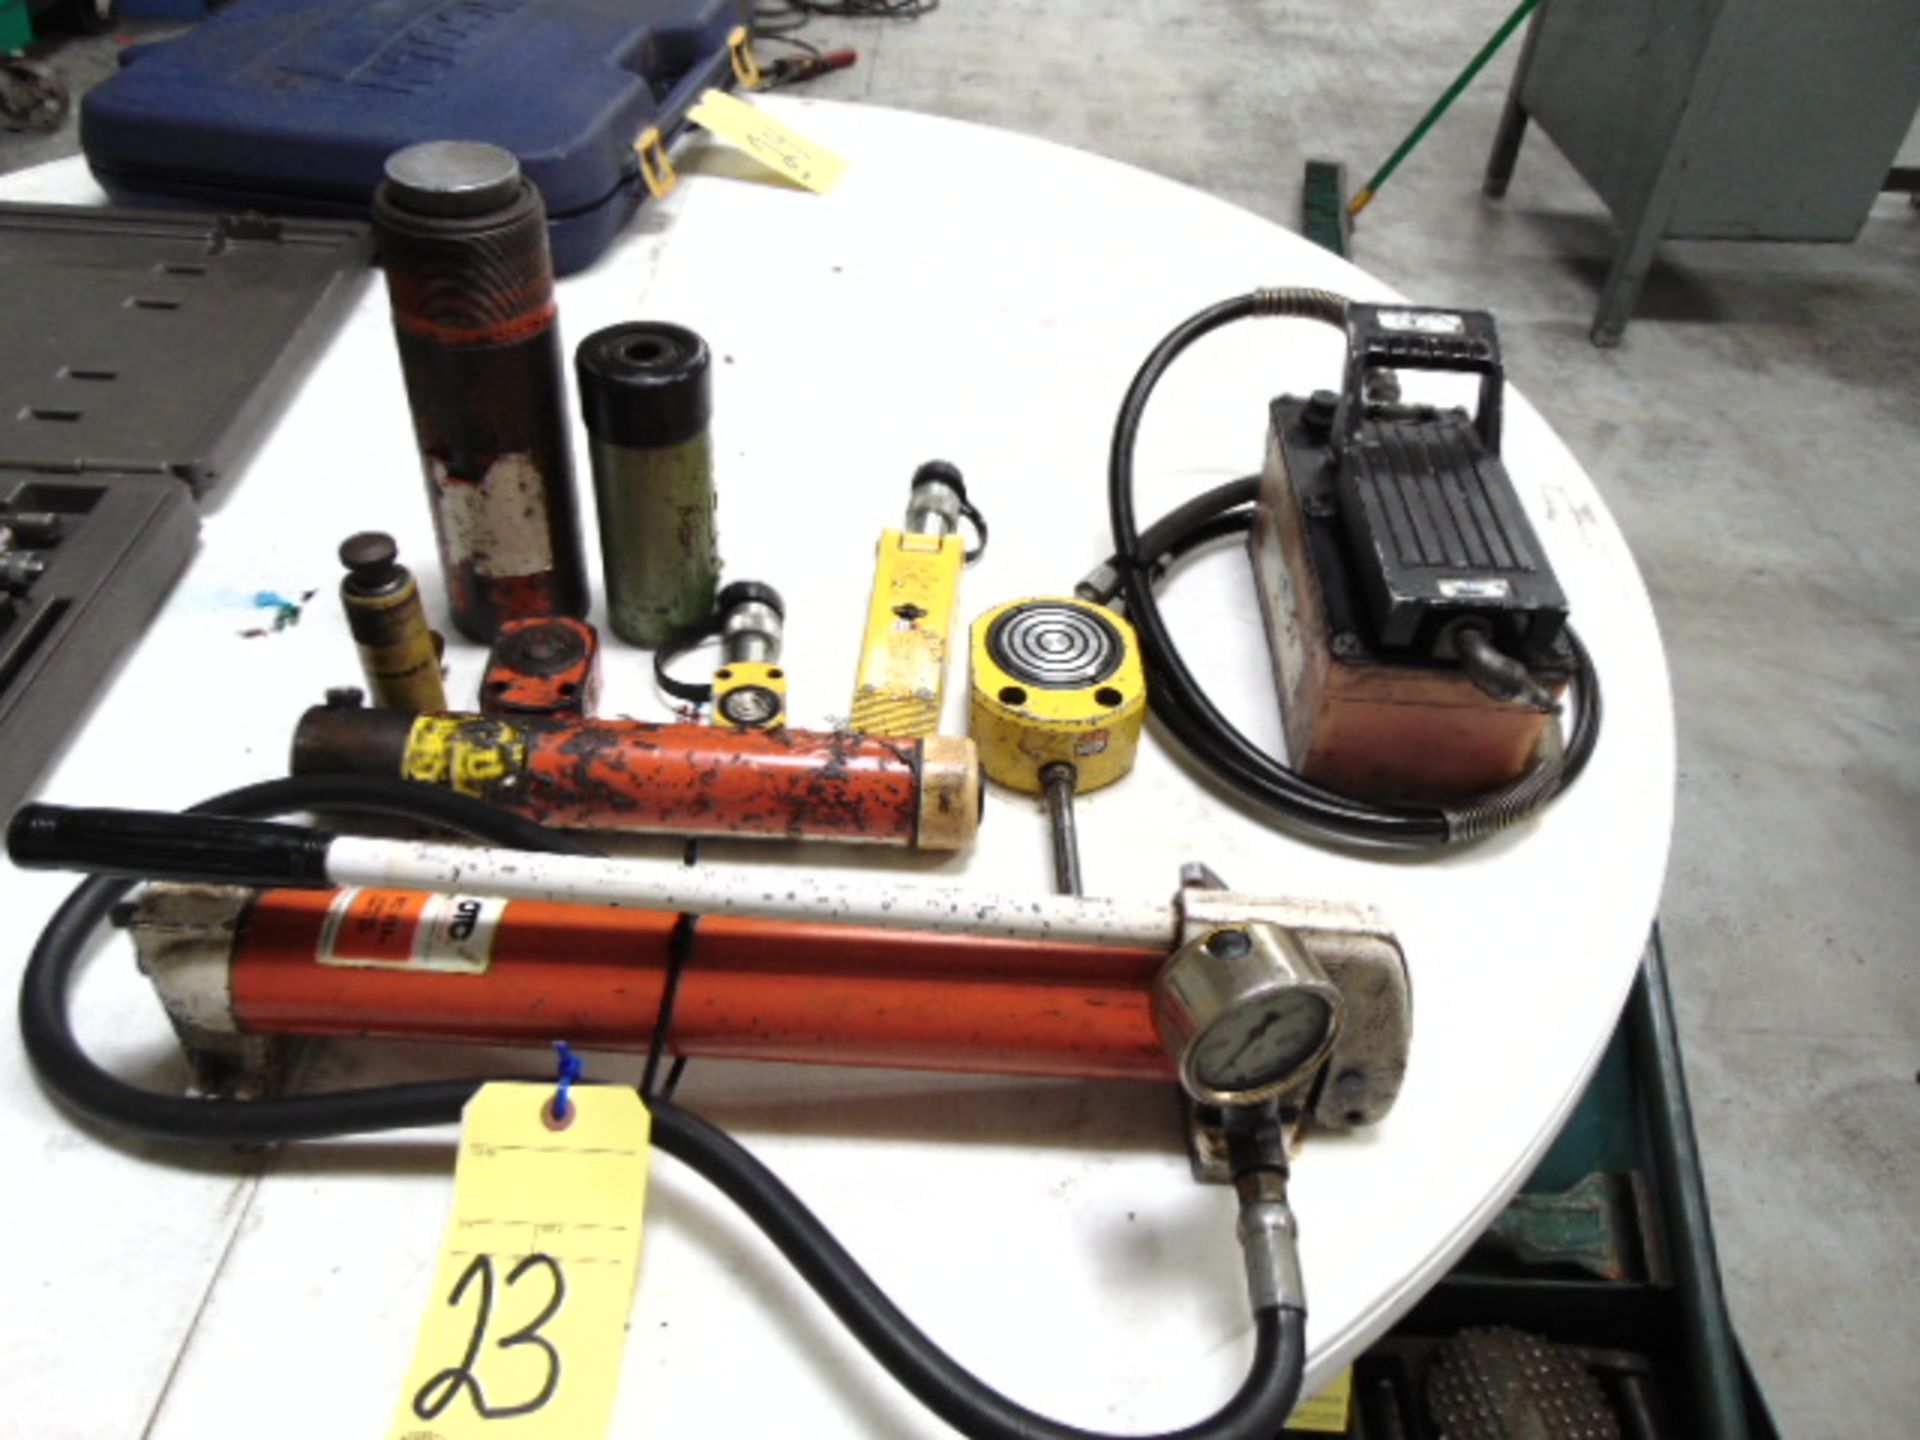 LOT CONSISTING OF: hydraulic power unit, w/(8) hydraulic jacks, assorted